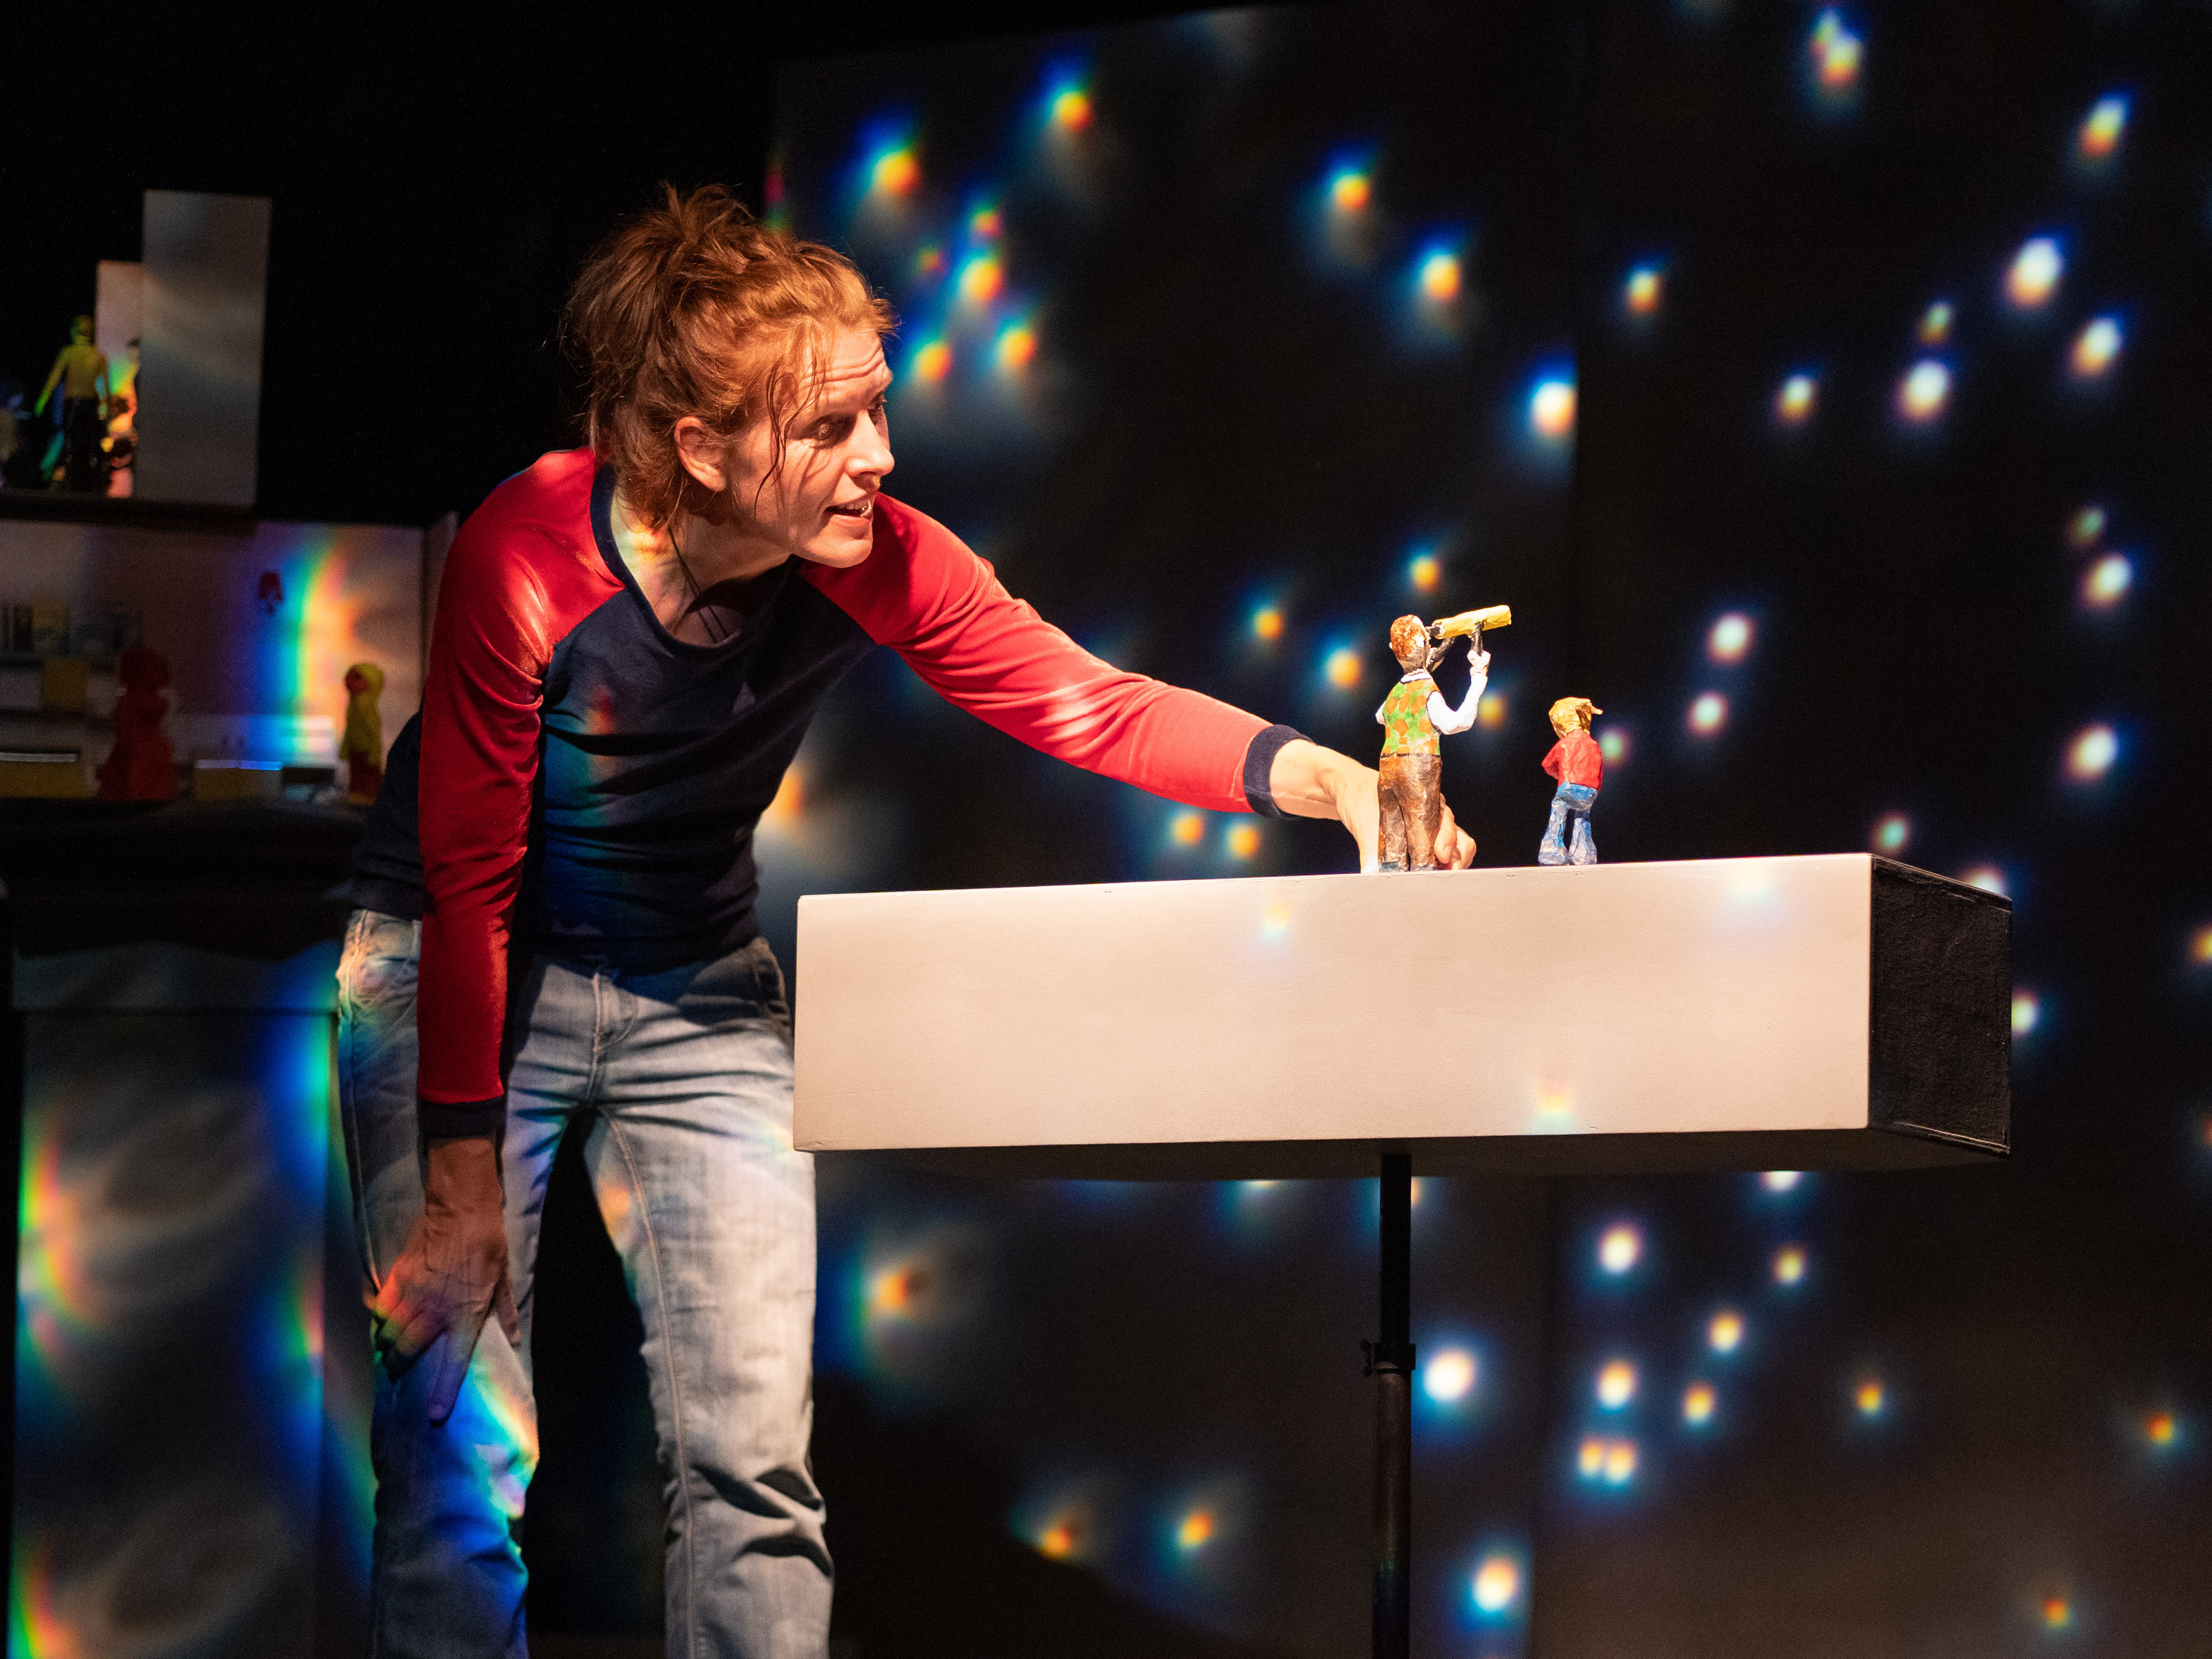 Puppenspielerin Annegret Geist beugt sich über ein längliches Brett in Hüfthöhe. Auf dem Brett steht die Figur eines kleinen Mädchens und eines Mannes mit einem Fernglas zum Sterne beobachten. Hinter den Beiden leuchten helle Punkte und simulieren einen Sternenhimmel.